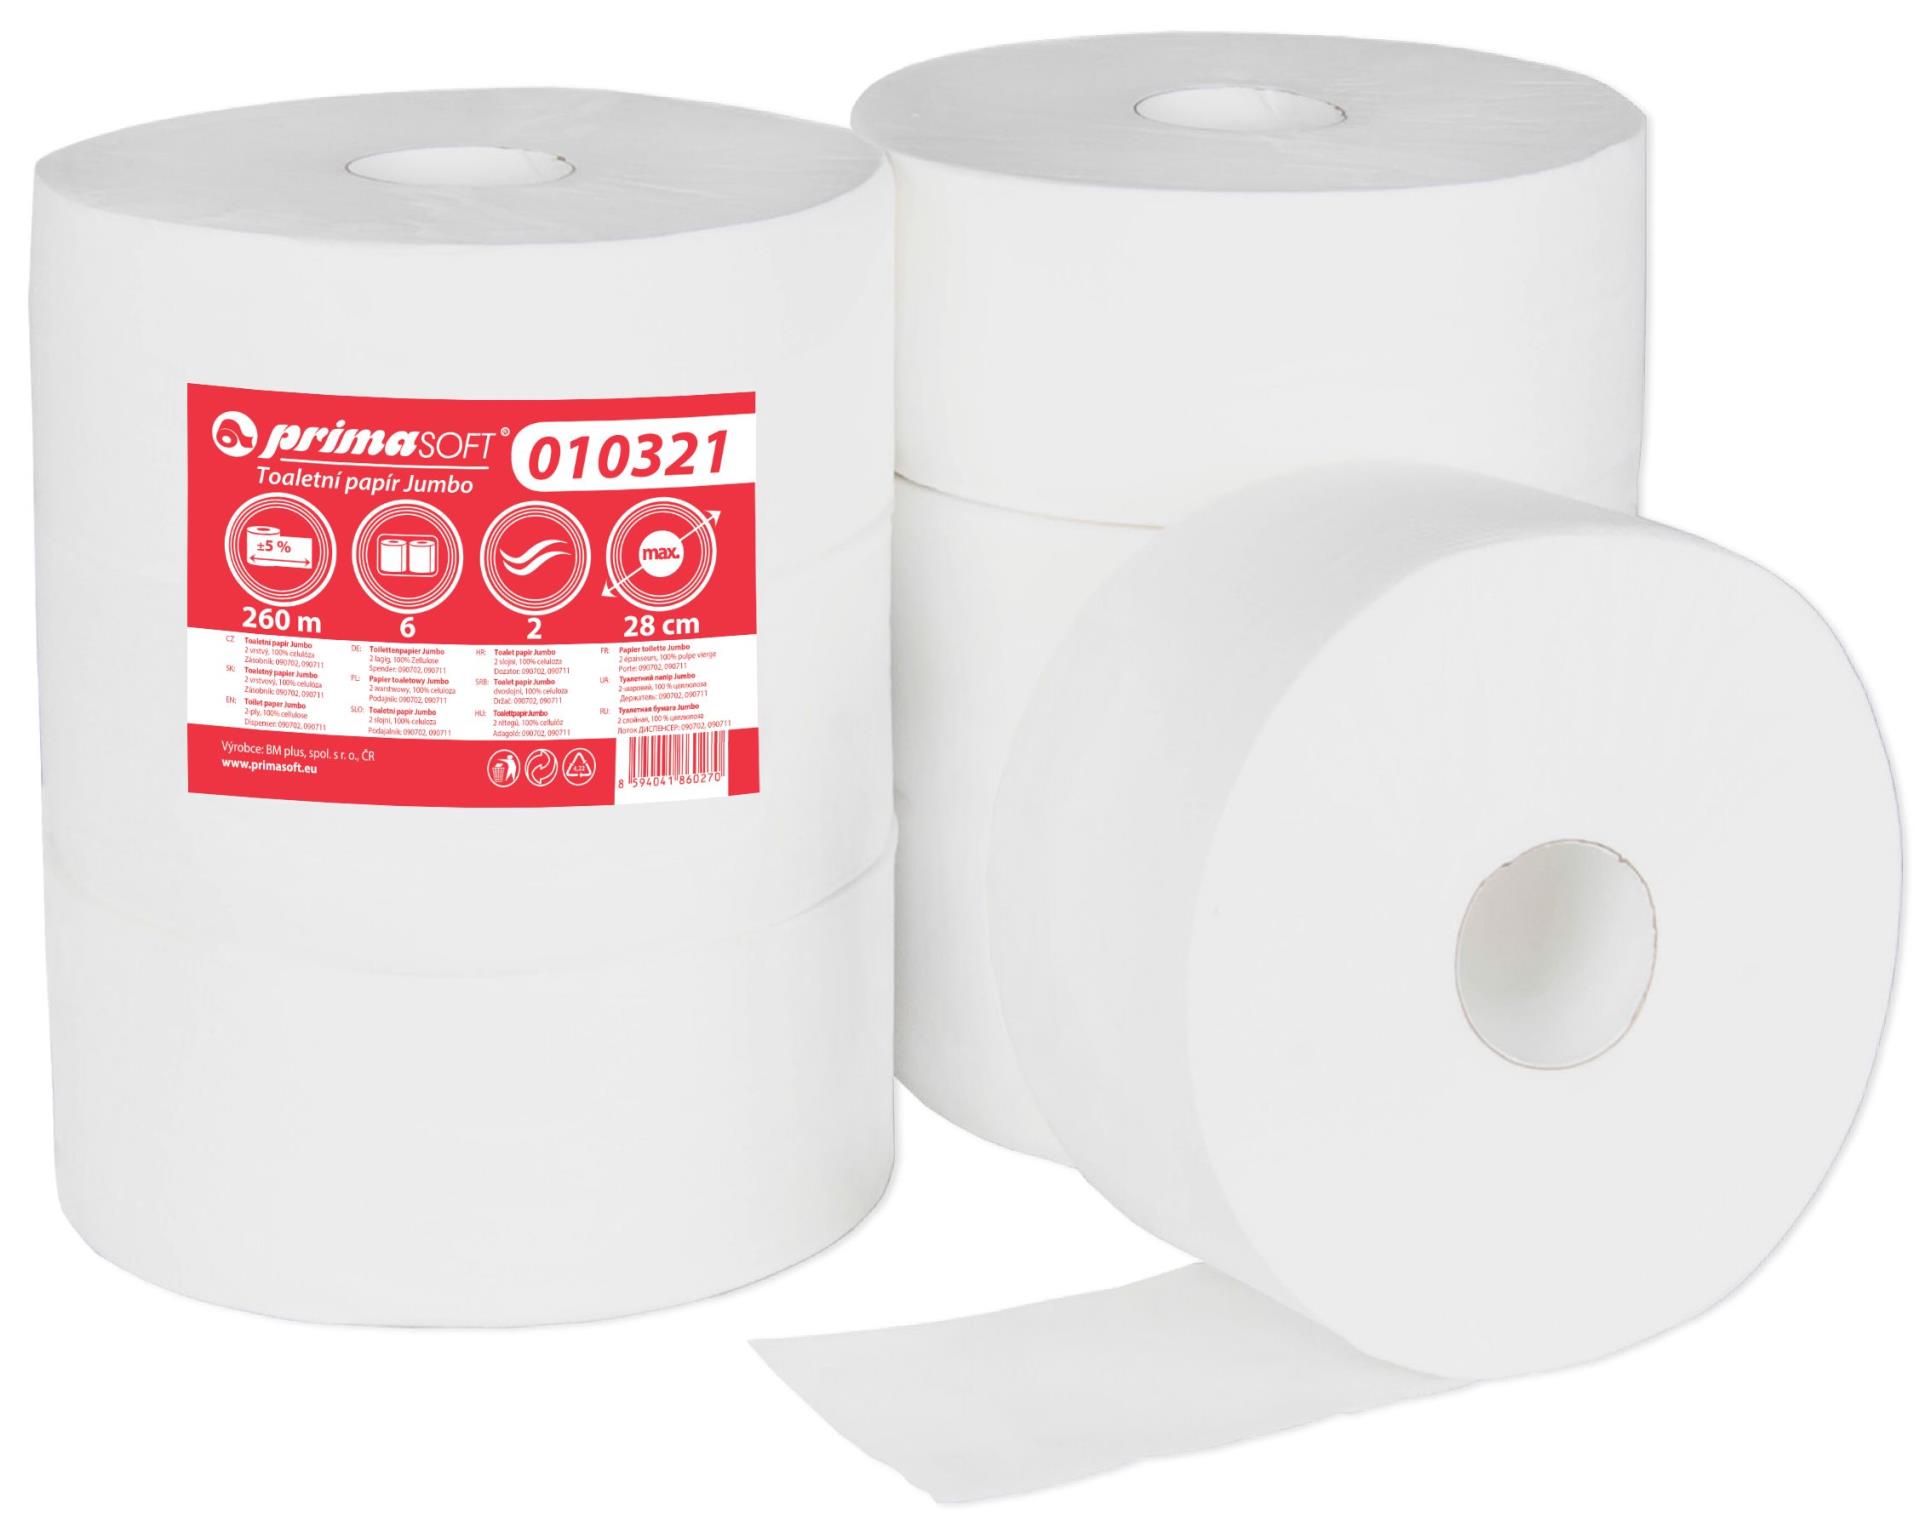 Primasoft Toaletní papír Jumbo, 28 cm, dvouvrstvý, 6 rolí